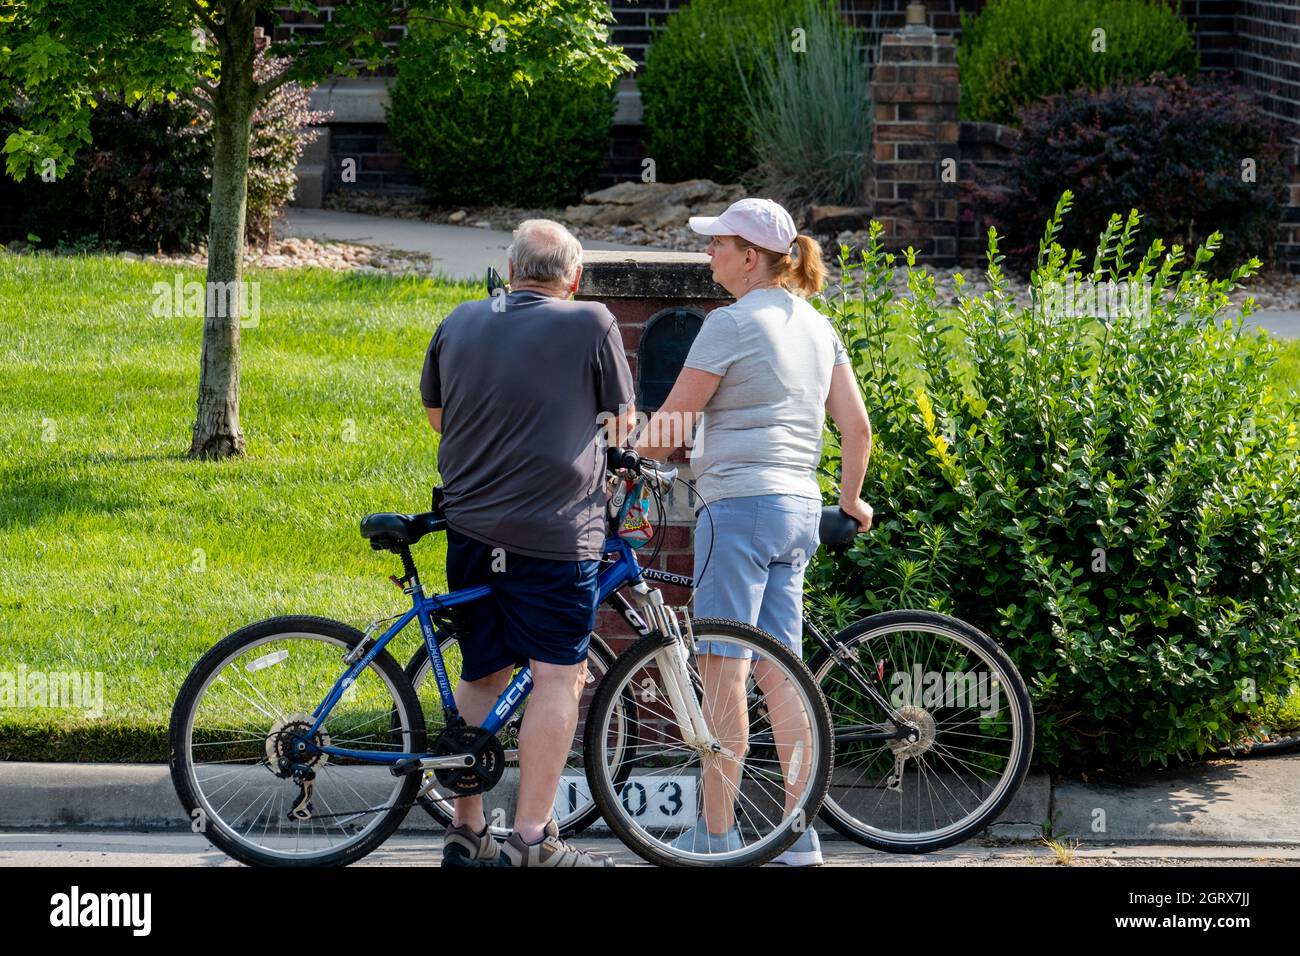 Un hombre mayor de raza blanca detiene su bicicleta en la calle de un barrio residencial para responder a su teléfono móvil mientras una compañera espera. EE.UU. Foto de stock